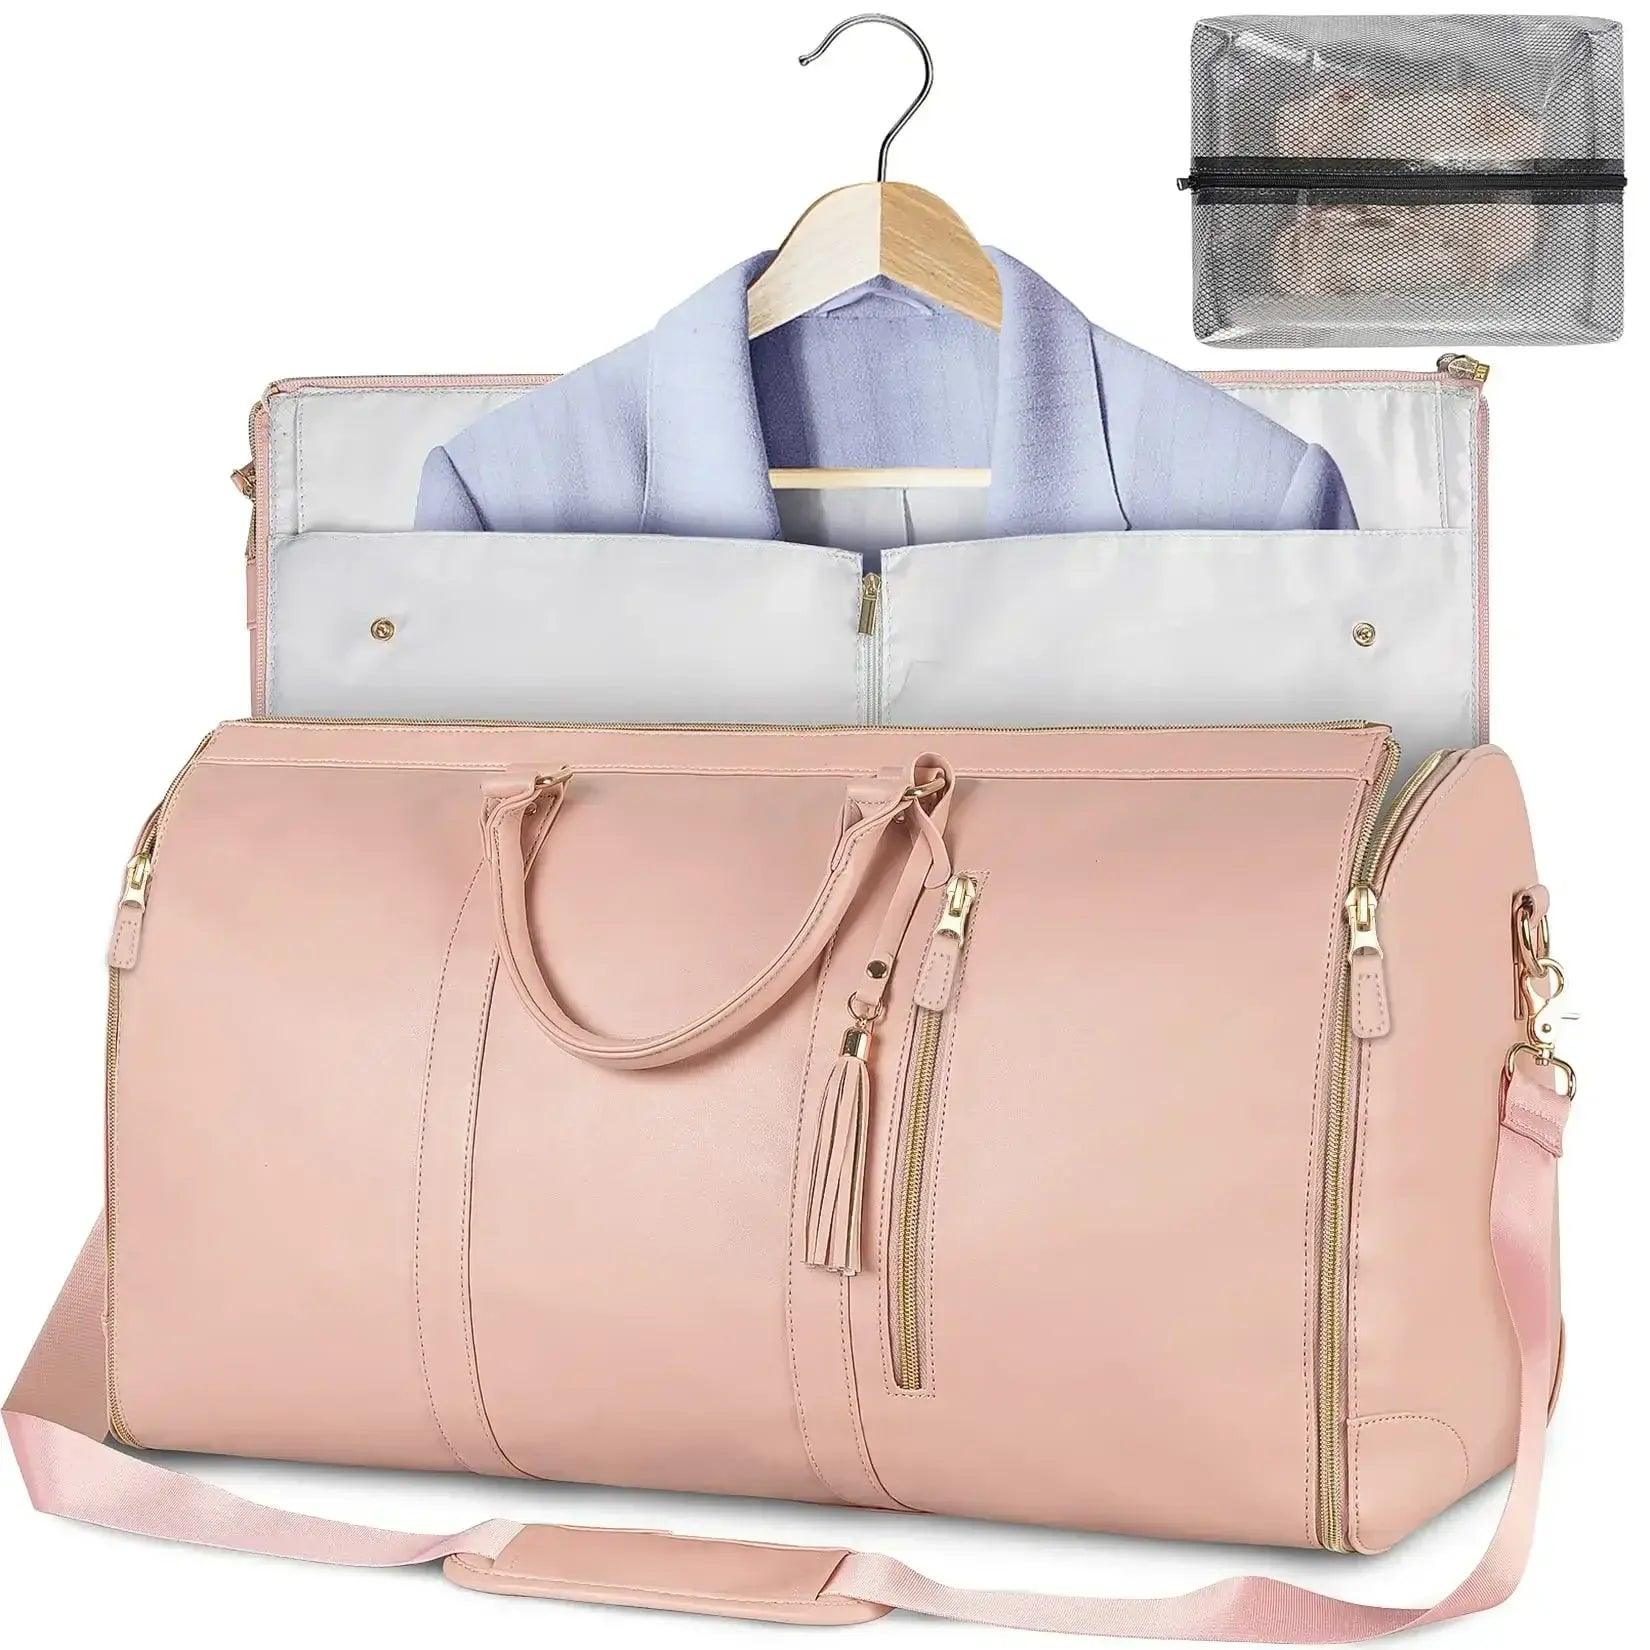 Foldable Travel Bag - ACO Marketplace